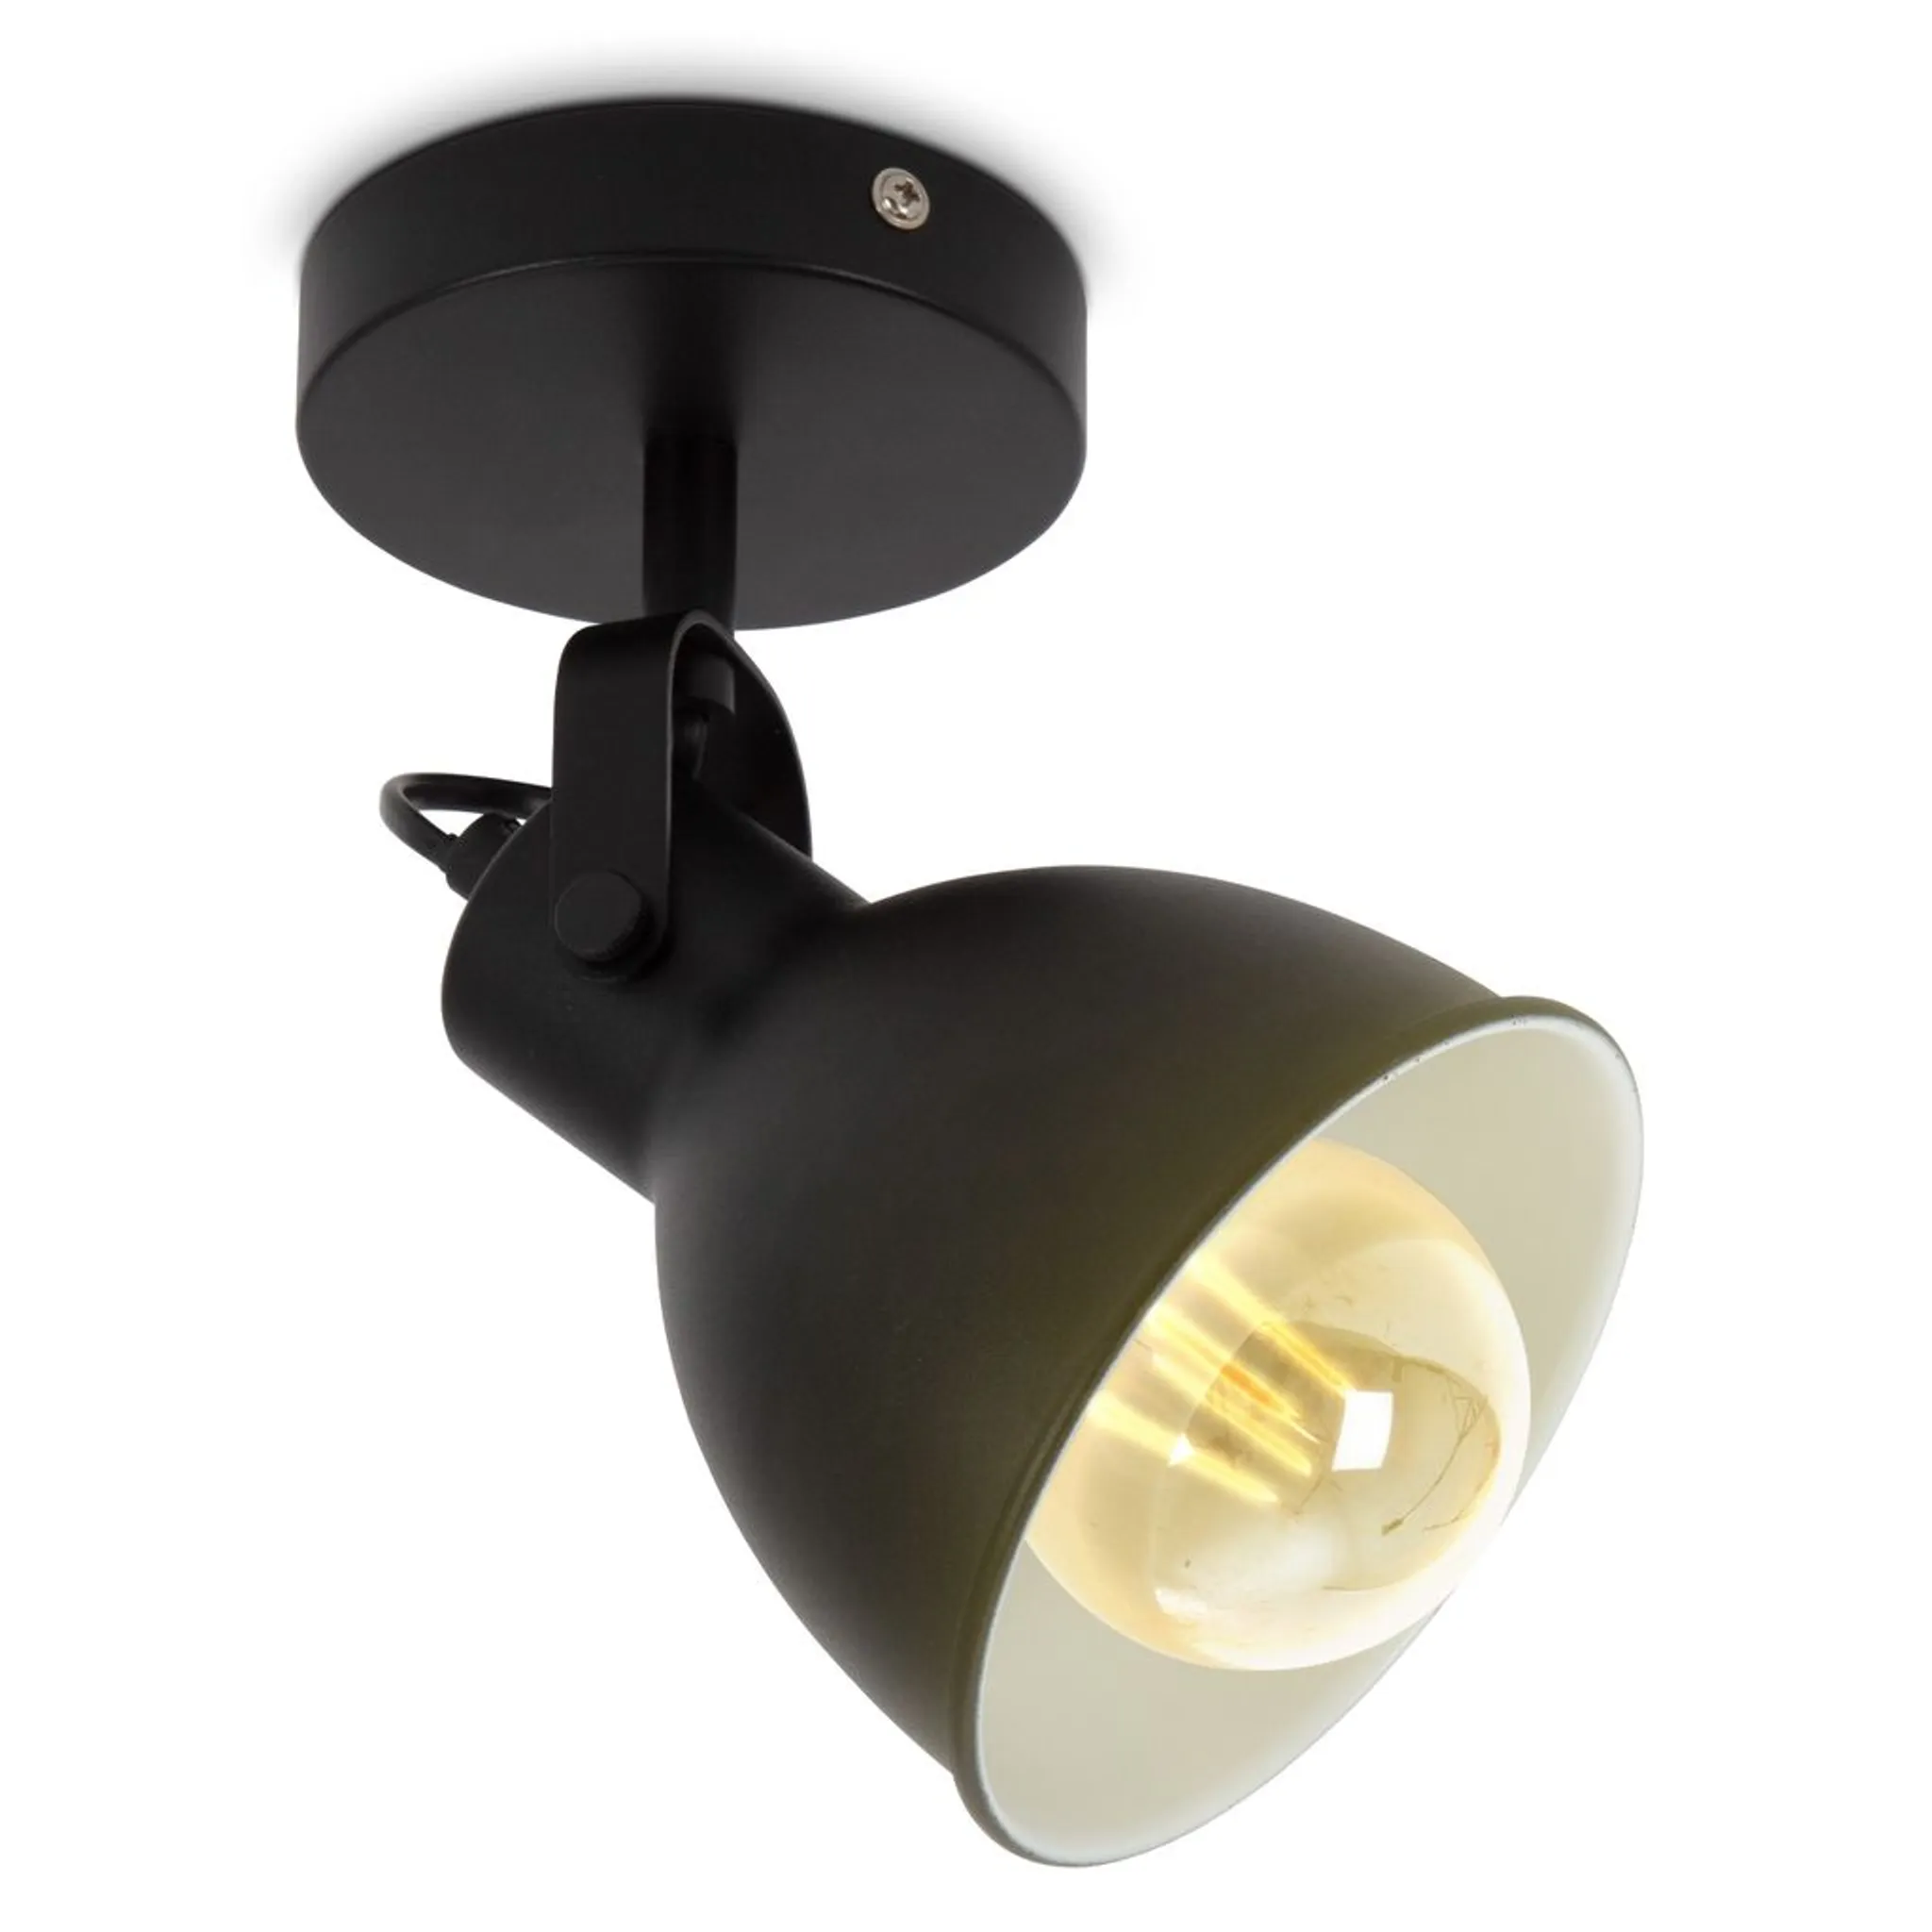 LED Wandlampe Spot Retro Industrial Design Vintage Wandleuchte matt schwarz  E27